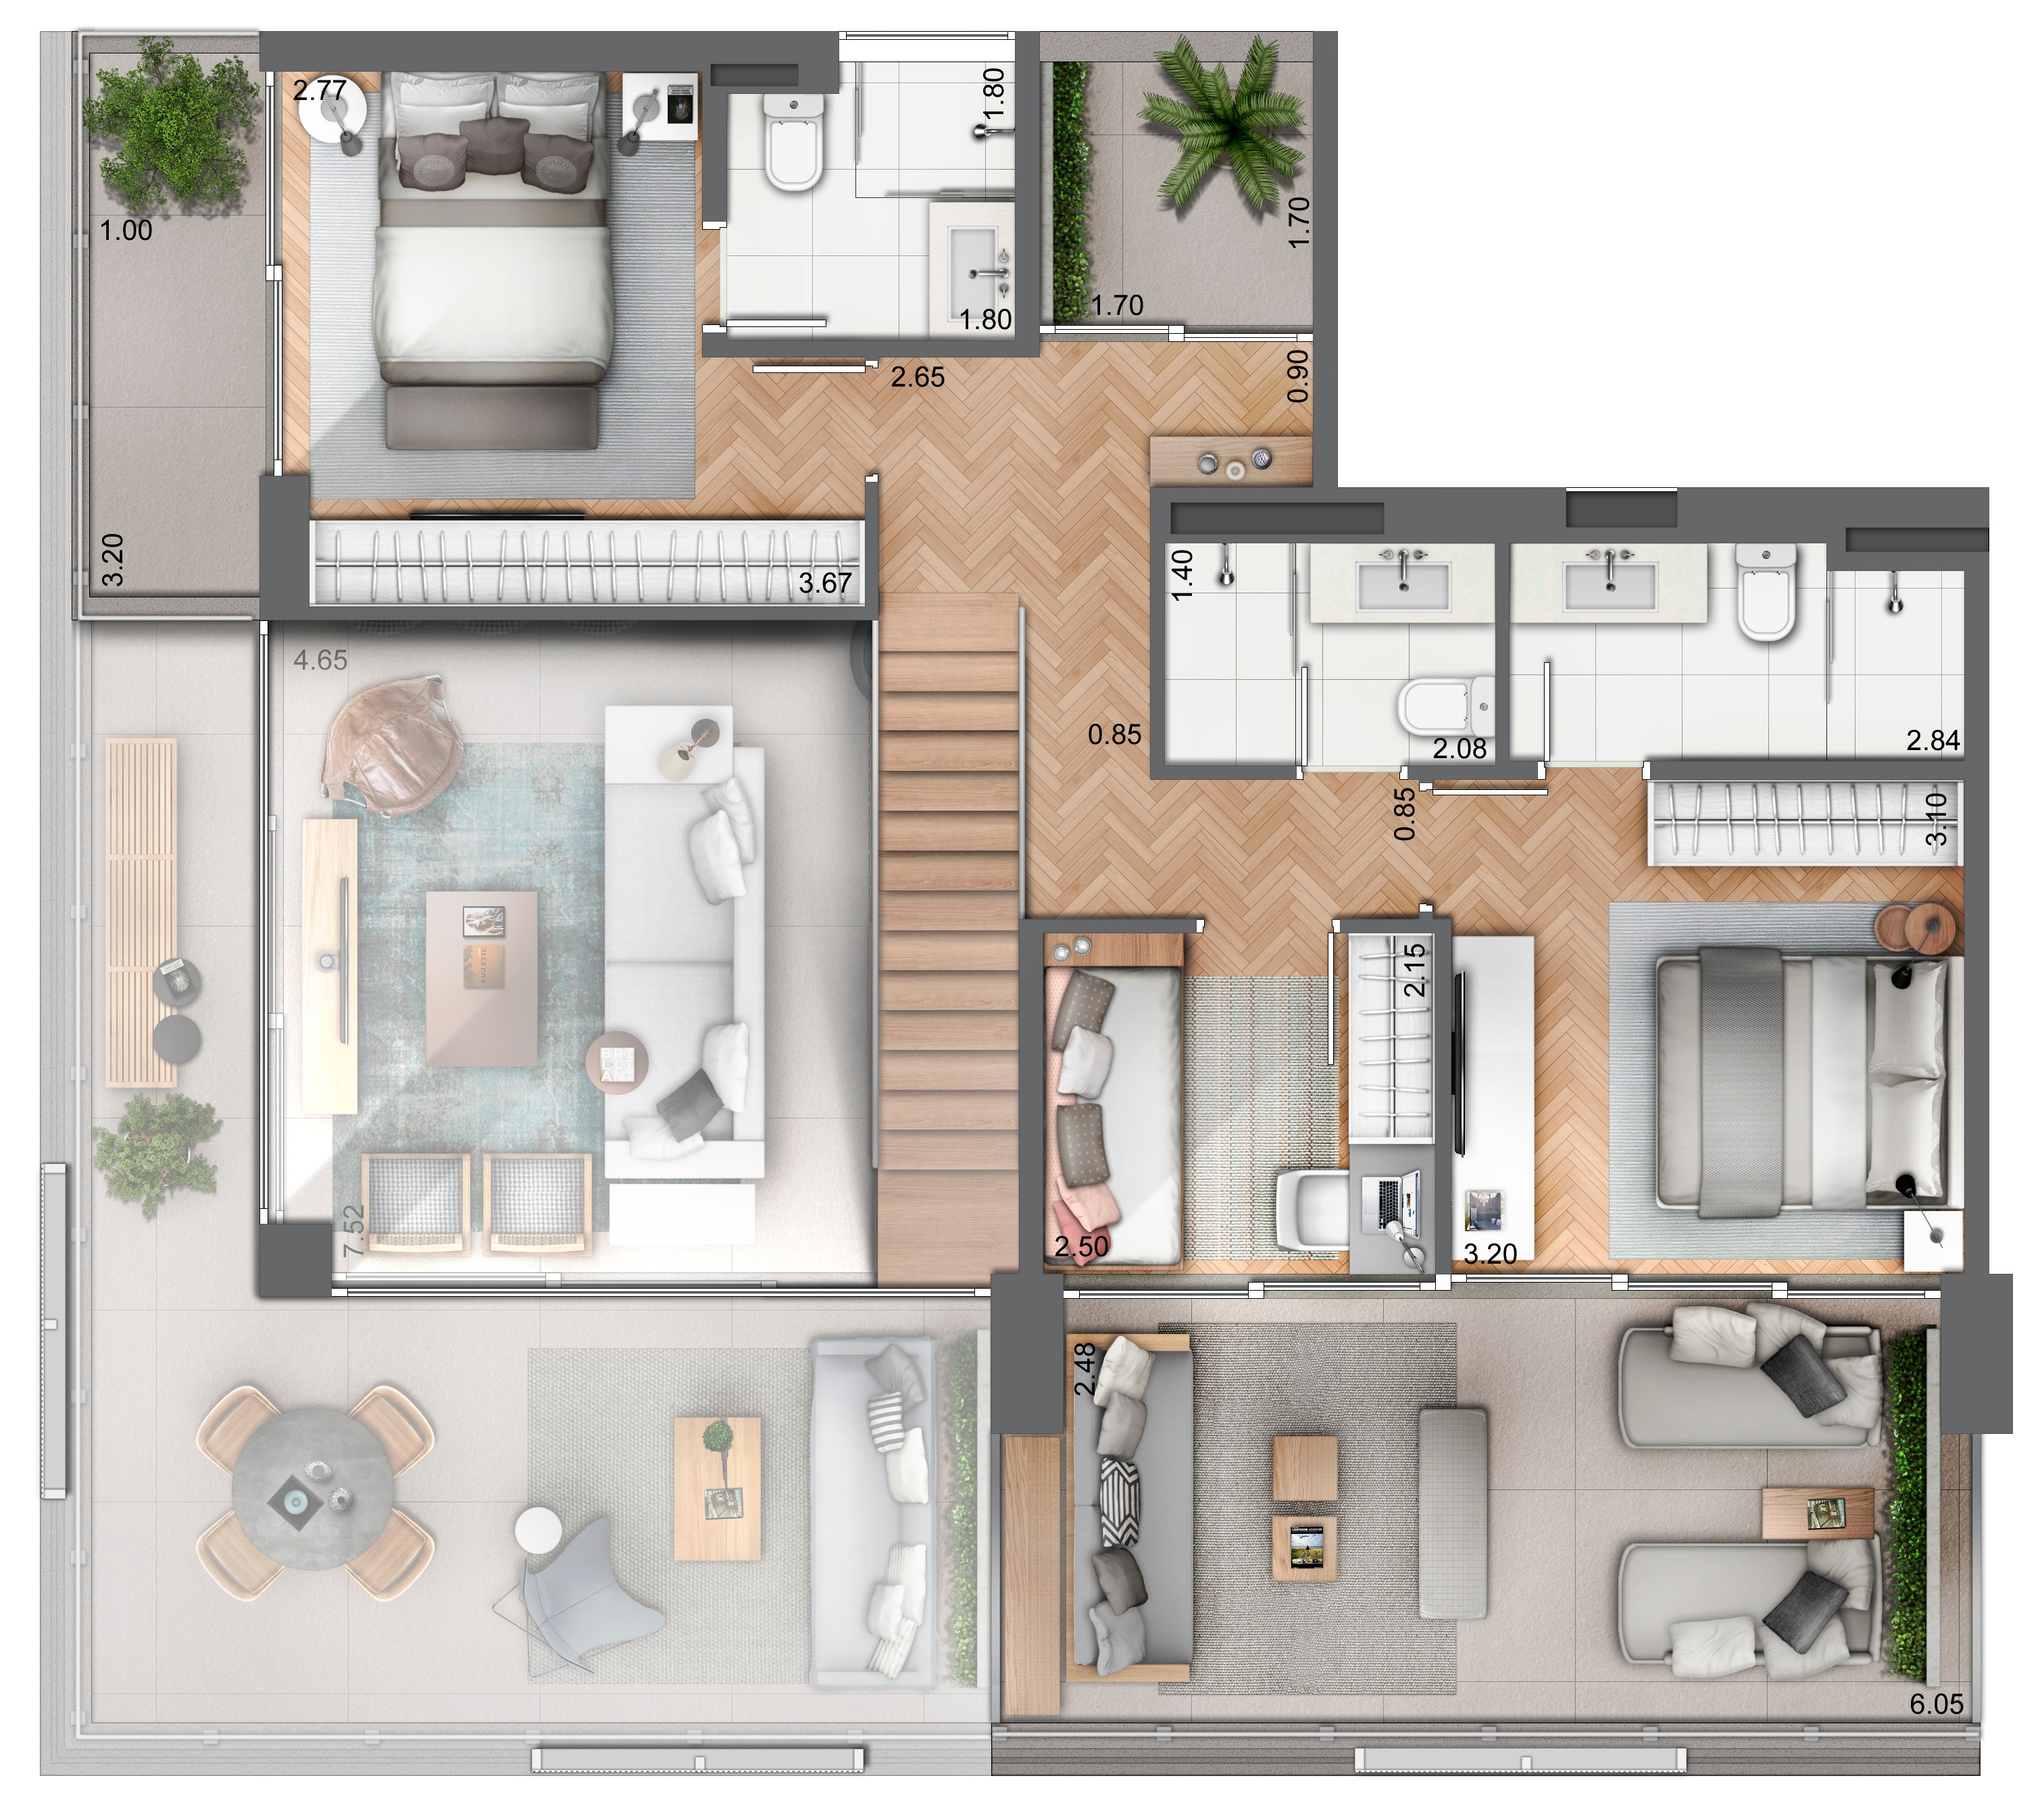 Duplex 139 m² - Piso superior (3 dormitórios)